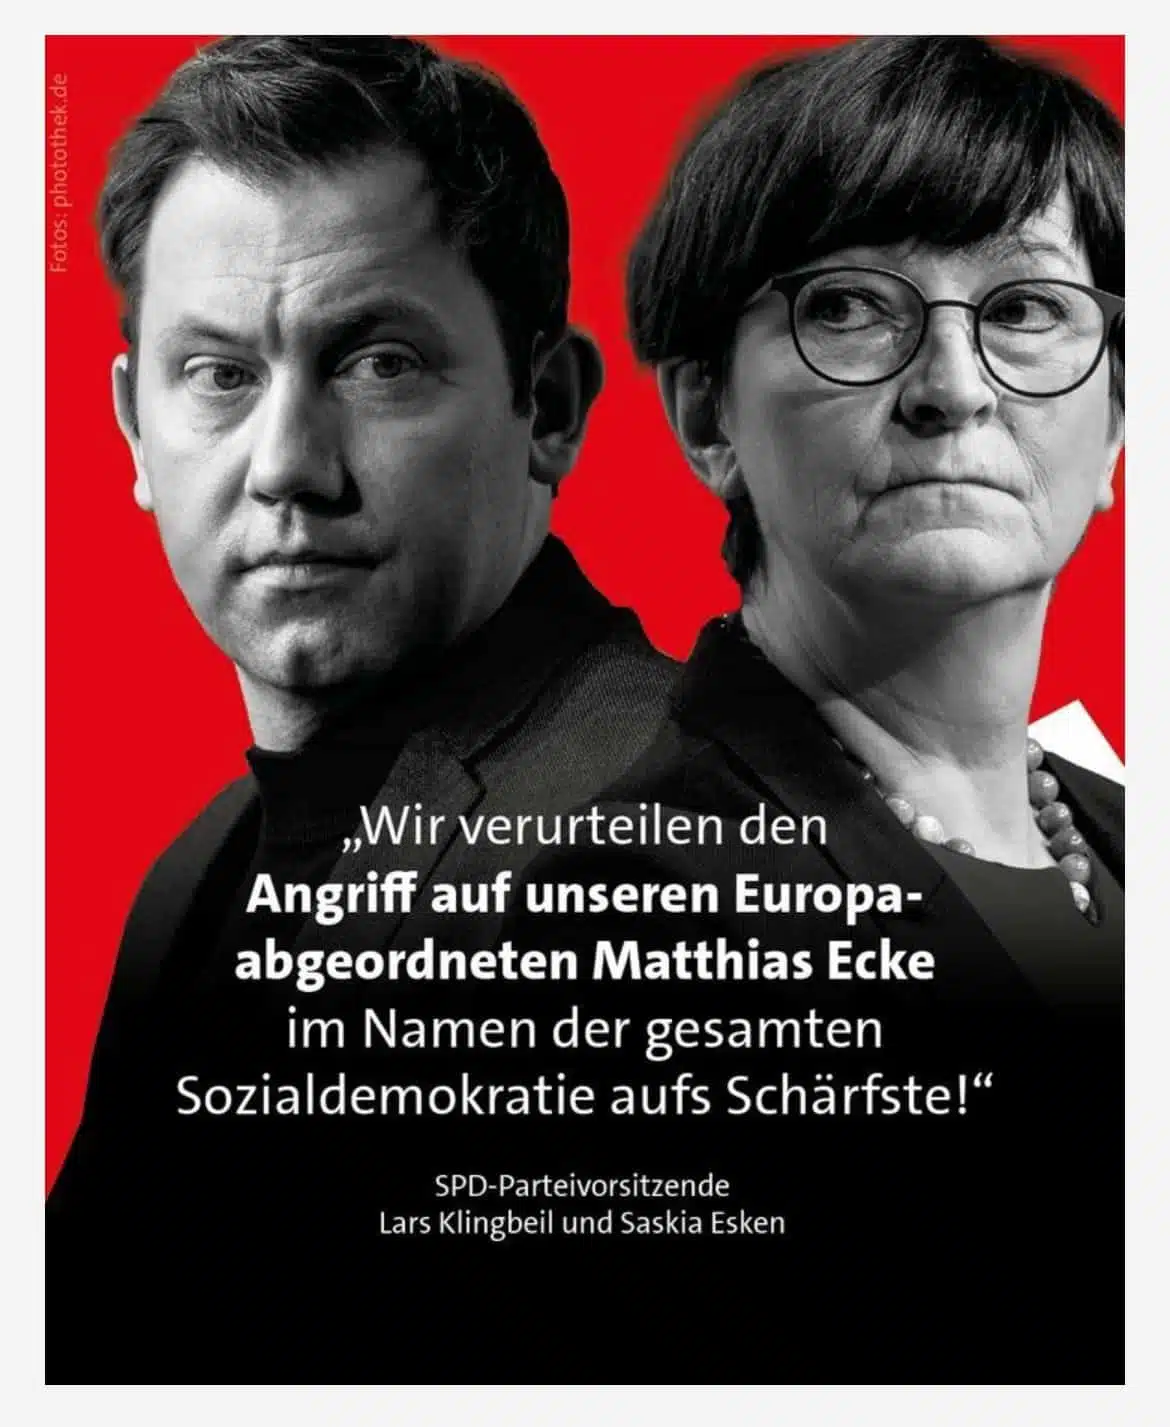 Wir verurteilen den Angriff auf unseren Europaabgeordneten Matthias Ecke im Namen der gesamten Sozialdemokratie aufs Schärfste! SPD-Parteivorsitzende Lars Klingbeil und Saskia Esken